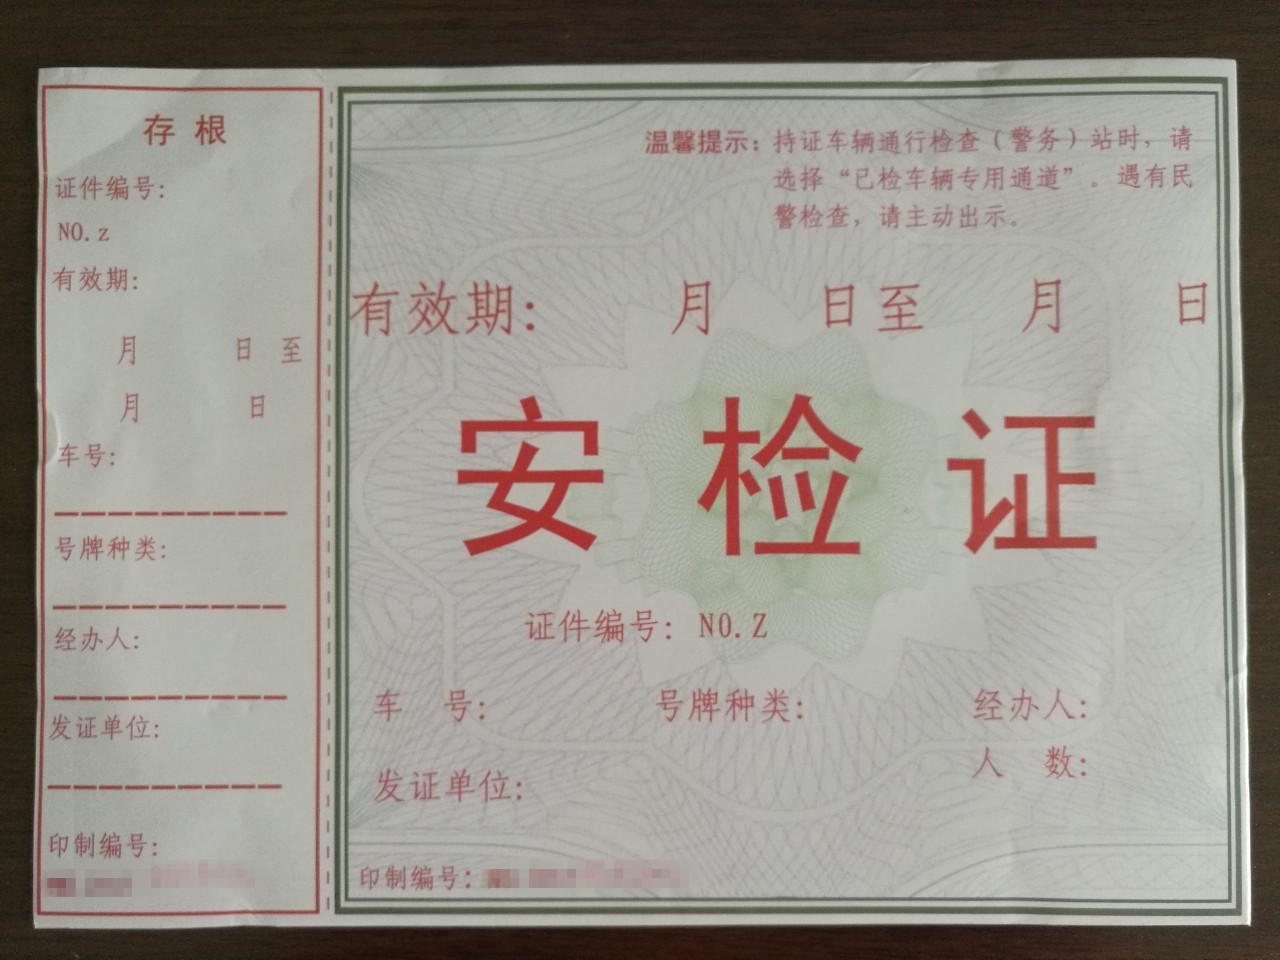 北京地铁安检证图片图片